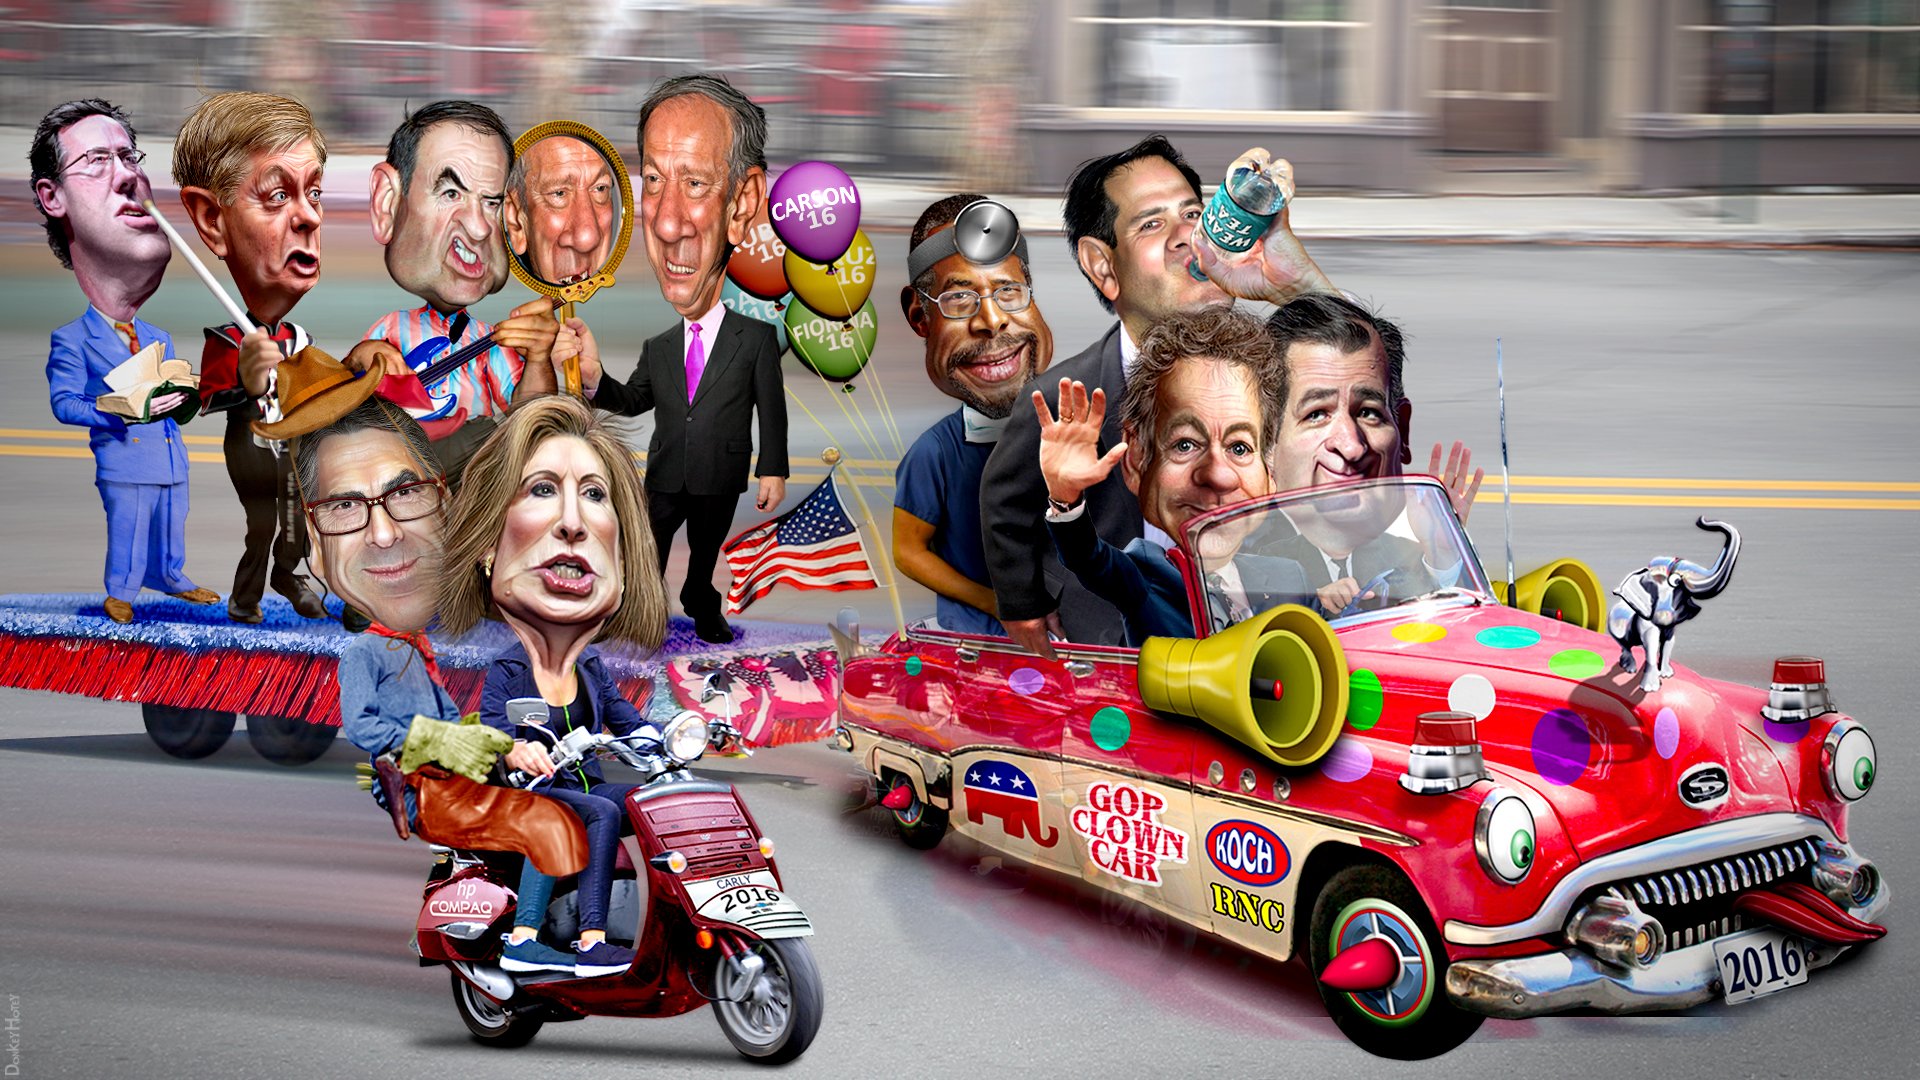 2016_Republican_Clown_Car_Parades_1920x1080.jpg